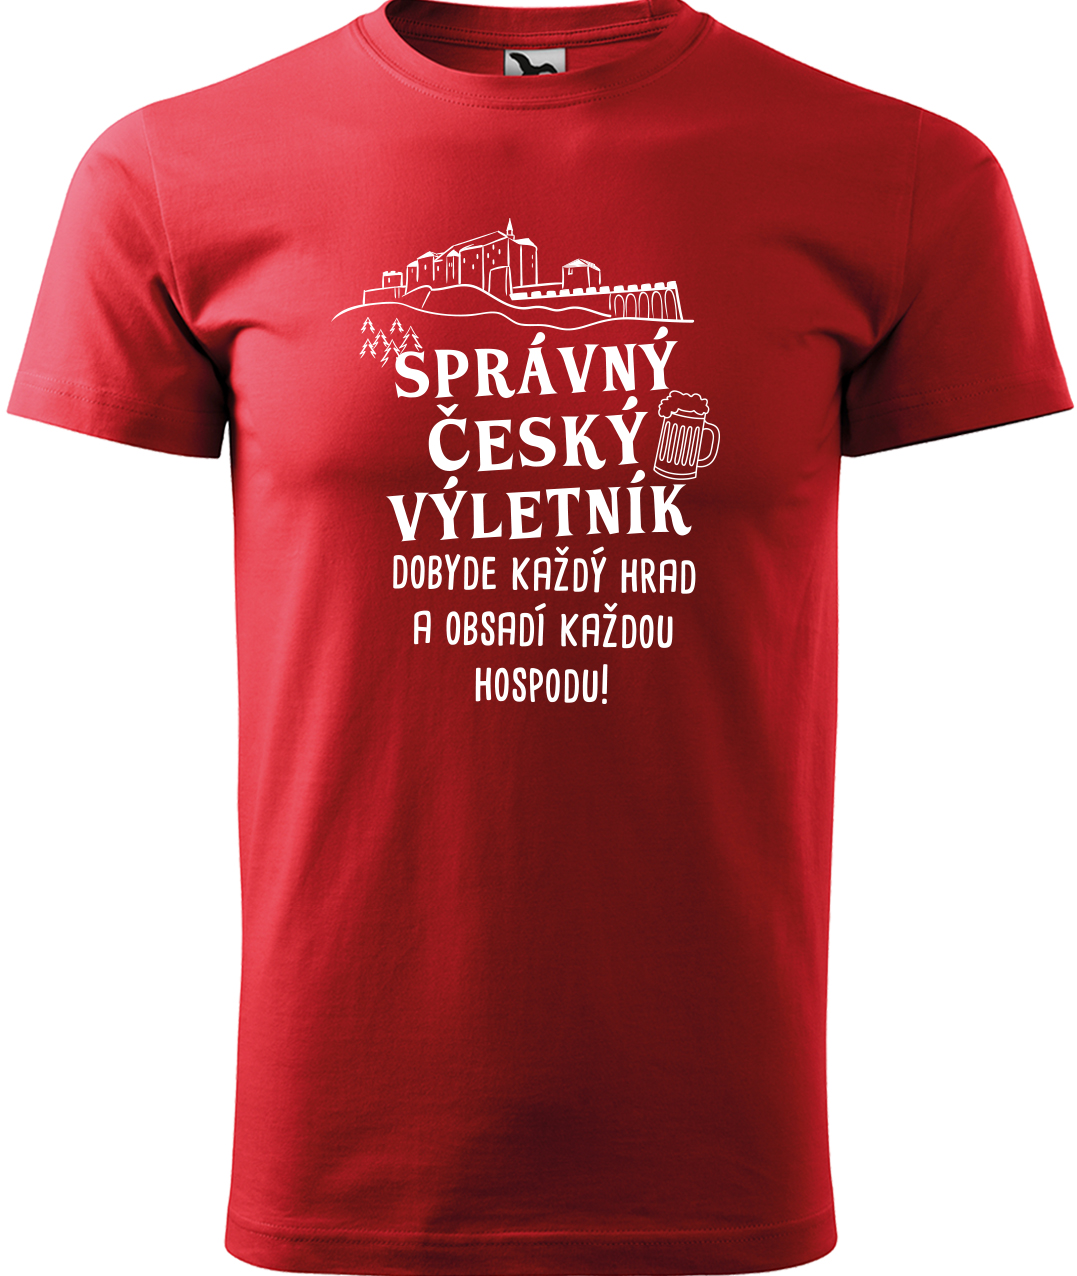 Pánské cestovatelské tričko - Správný český výletník Velikost: M, Barva: Červená (07), Střih: pánský